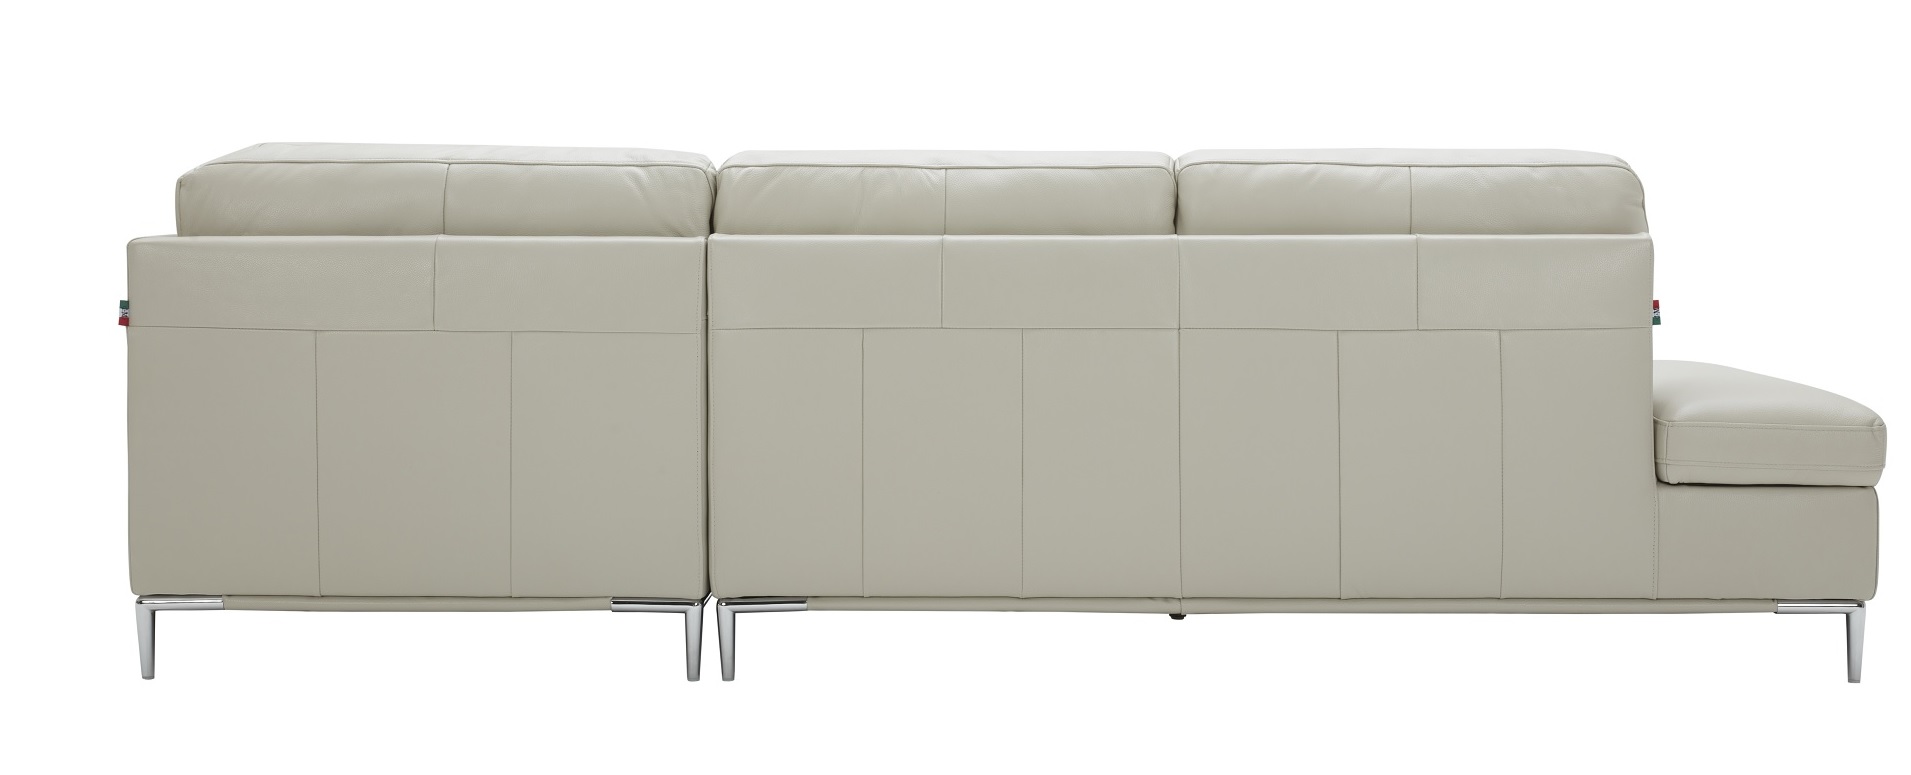 Adjustable Advanced Italian Sectional Upholstery